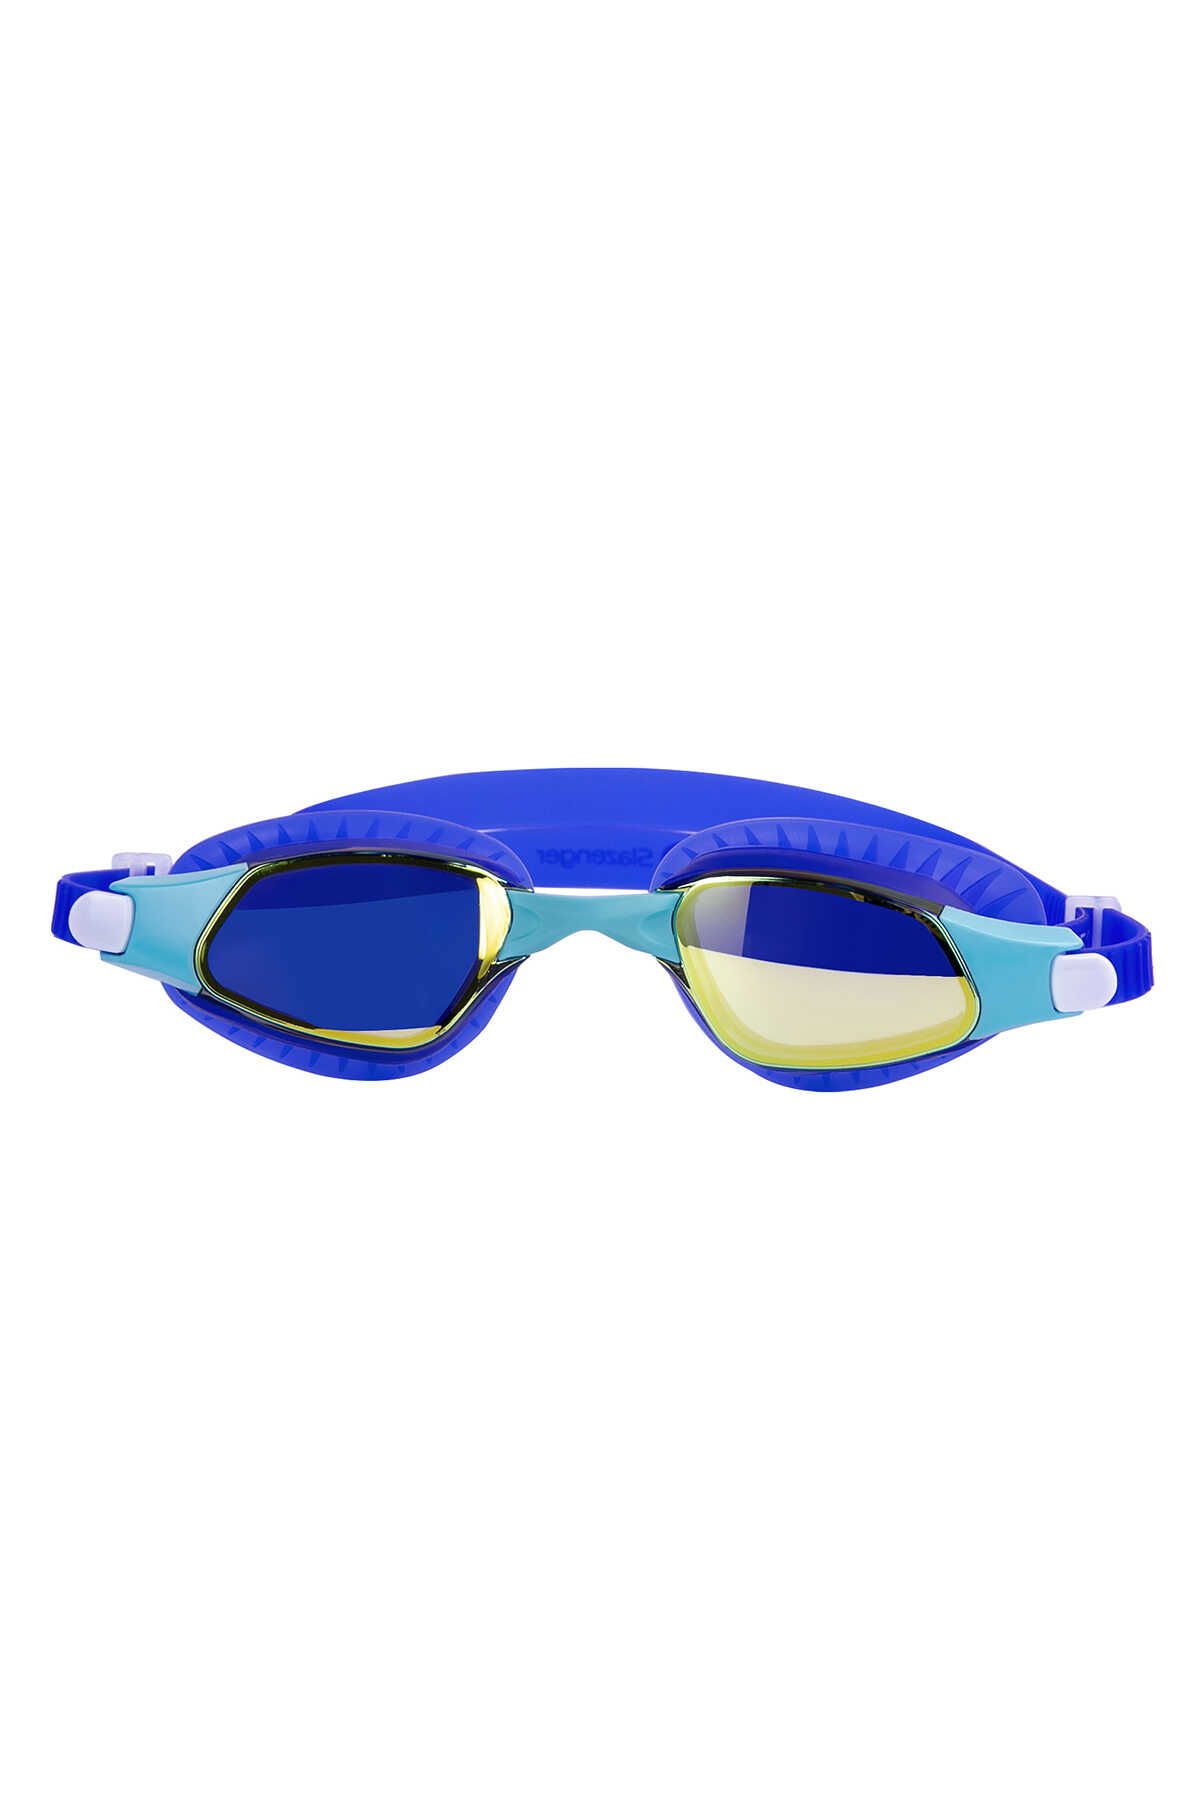 Slazenger - Slazenger Reflex GT14 Unisex Yüzücü Gözlüğü Mavi